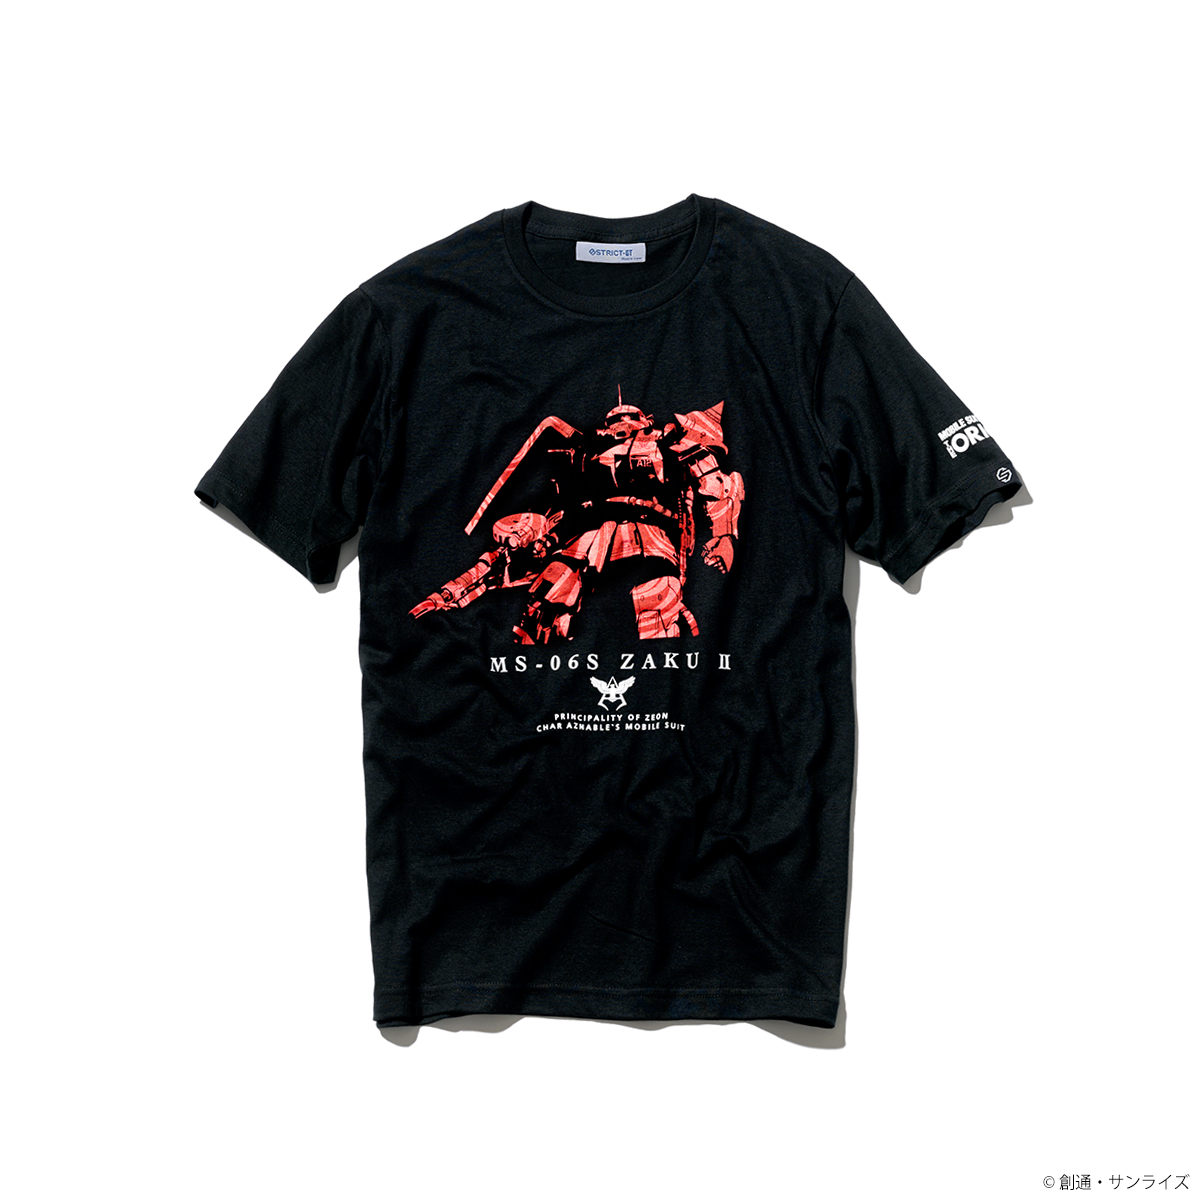 『機動戦士ガンダム THE ORIGIN』マーブル柄 Tシャツ シャア専用ザクII